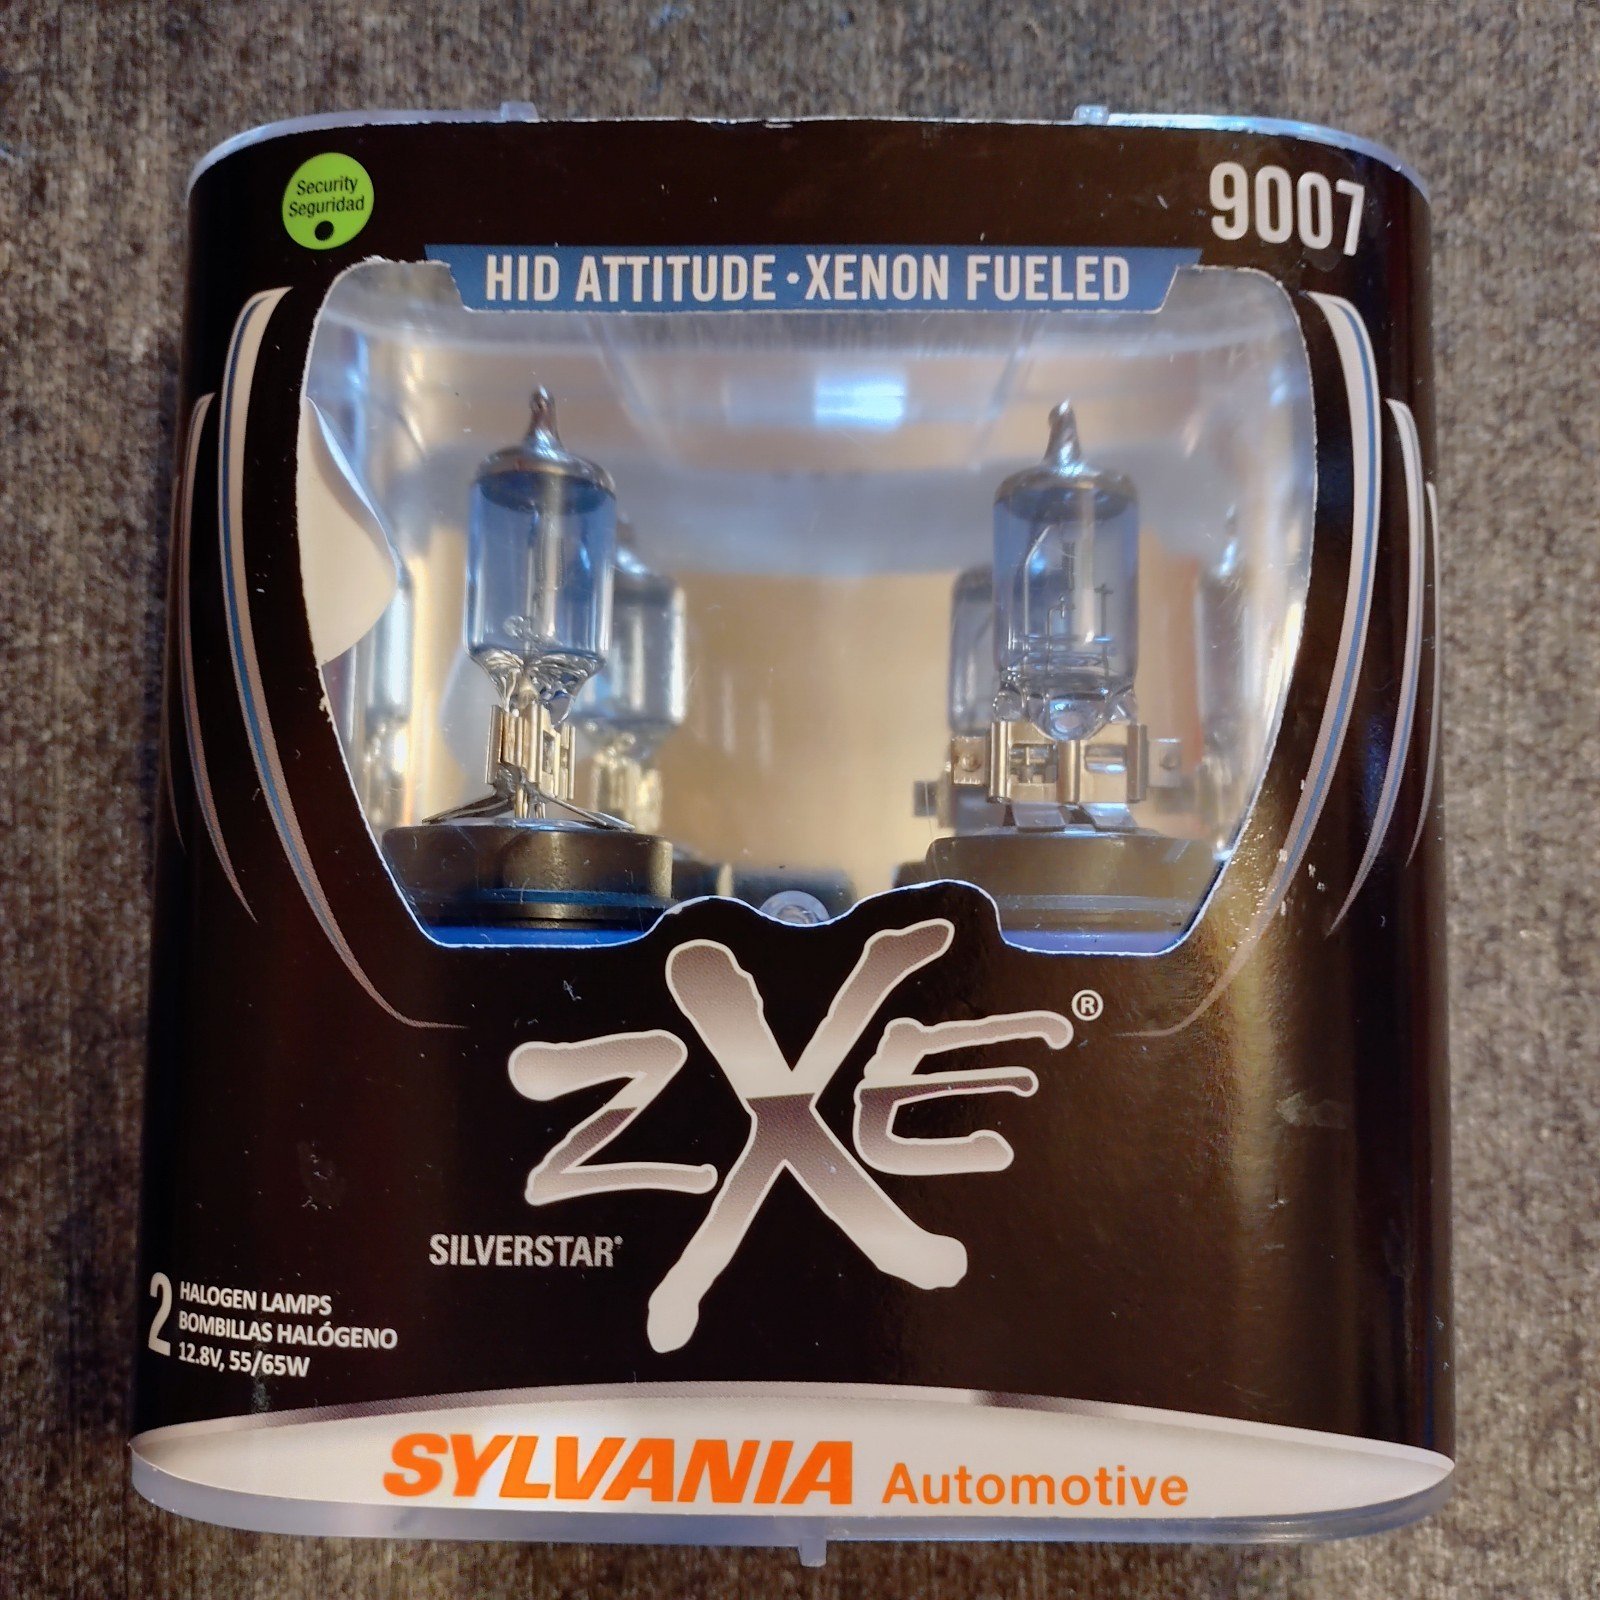 Sylvania ZXE 9007 Halogen Lamps r6vPg4vJn